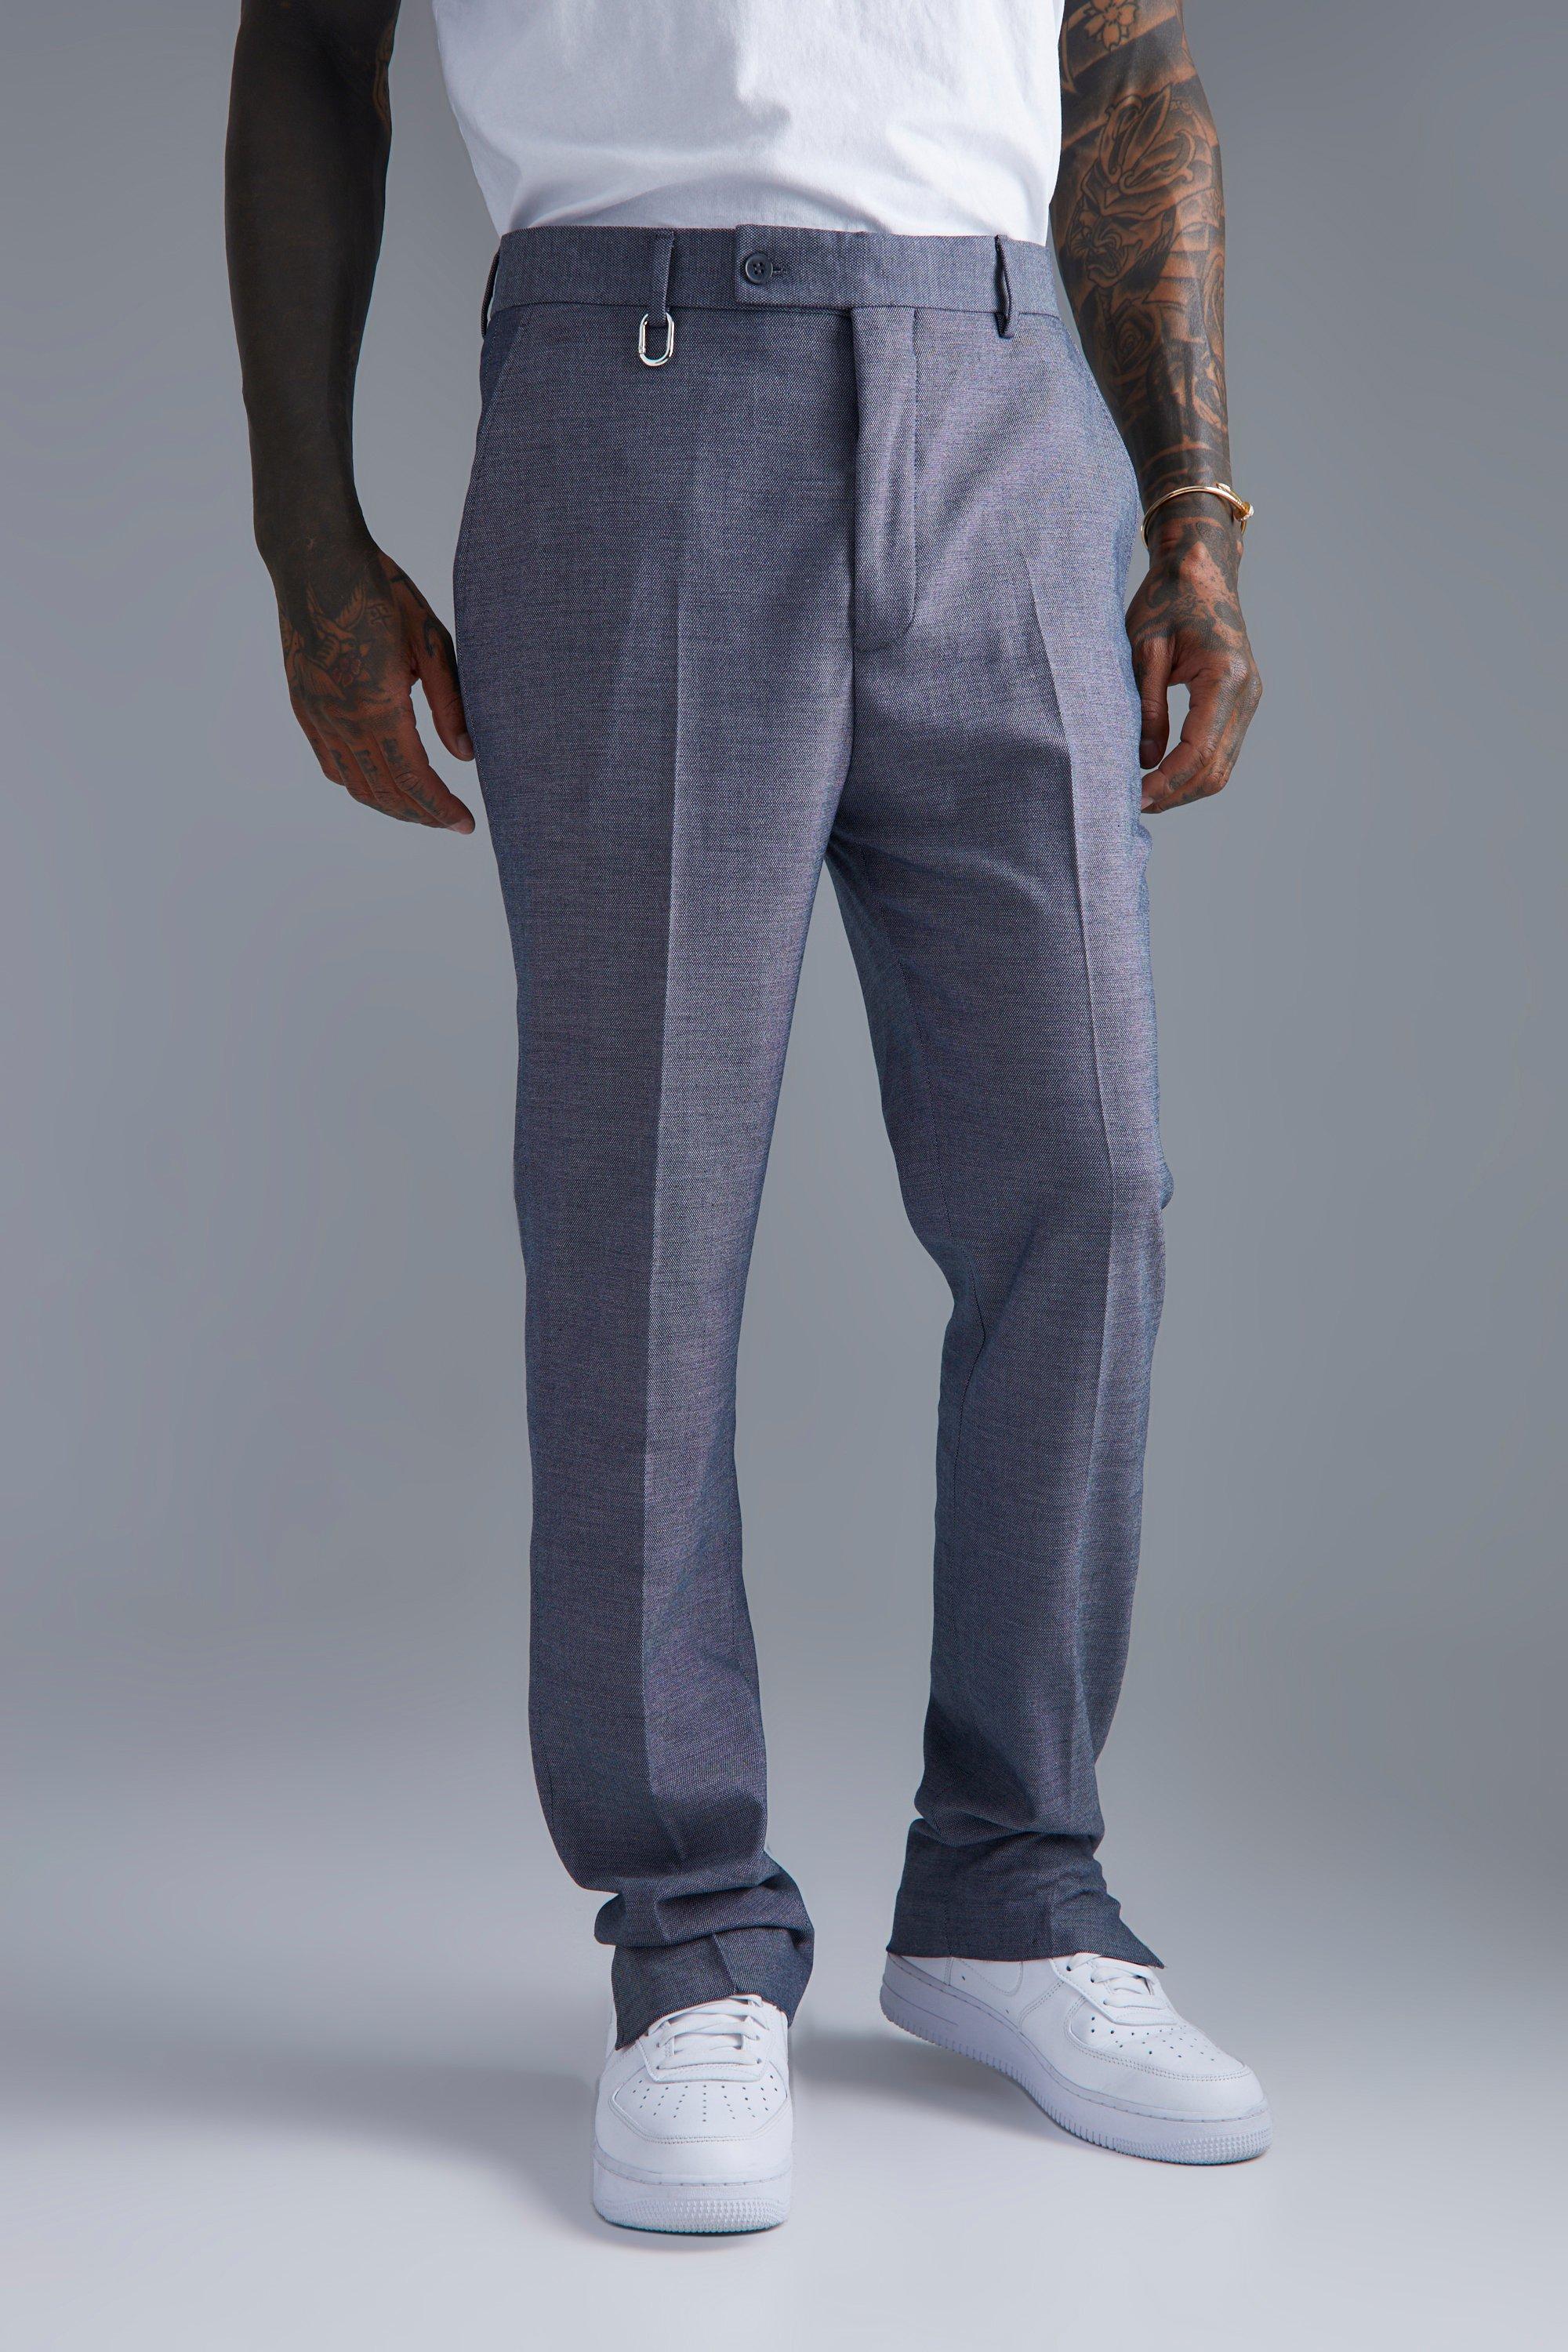 pantalon droit texturé fendu homme - gris - 32, gris